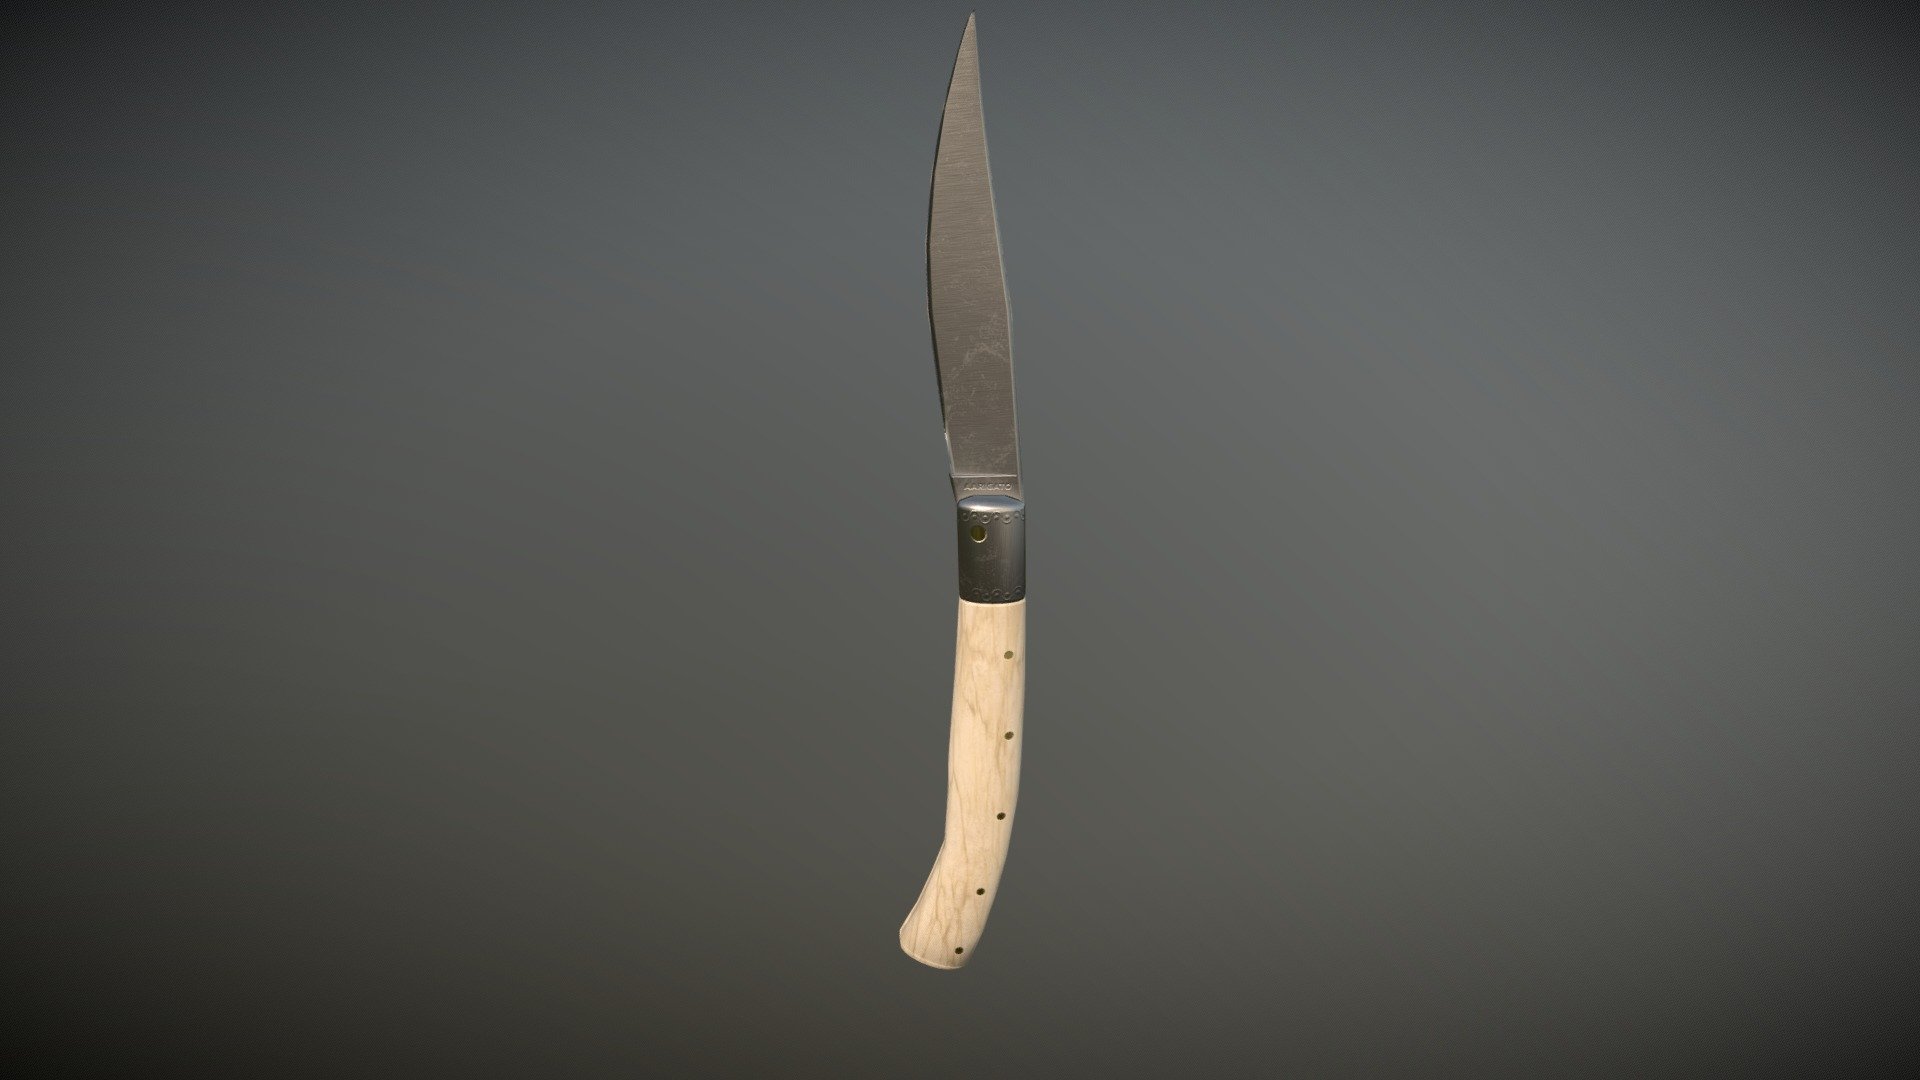 Italian Leather Knife - 3D model by aarigato 3d model